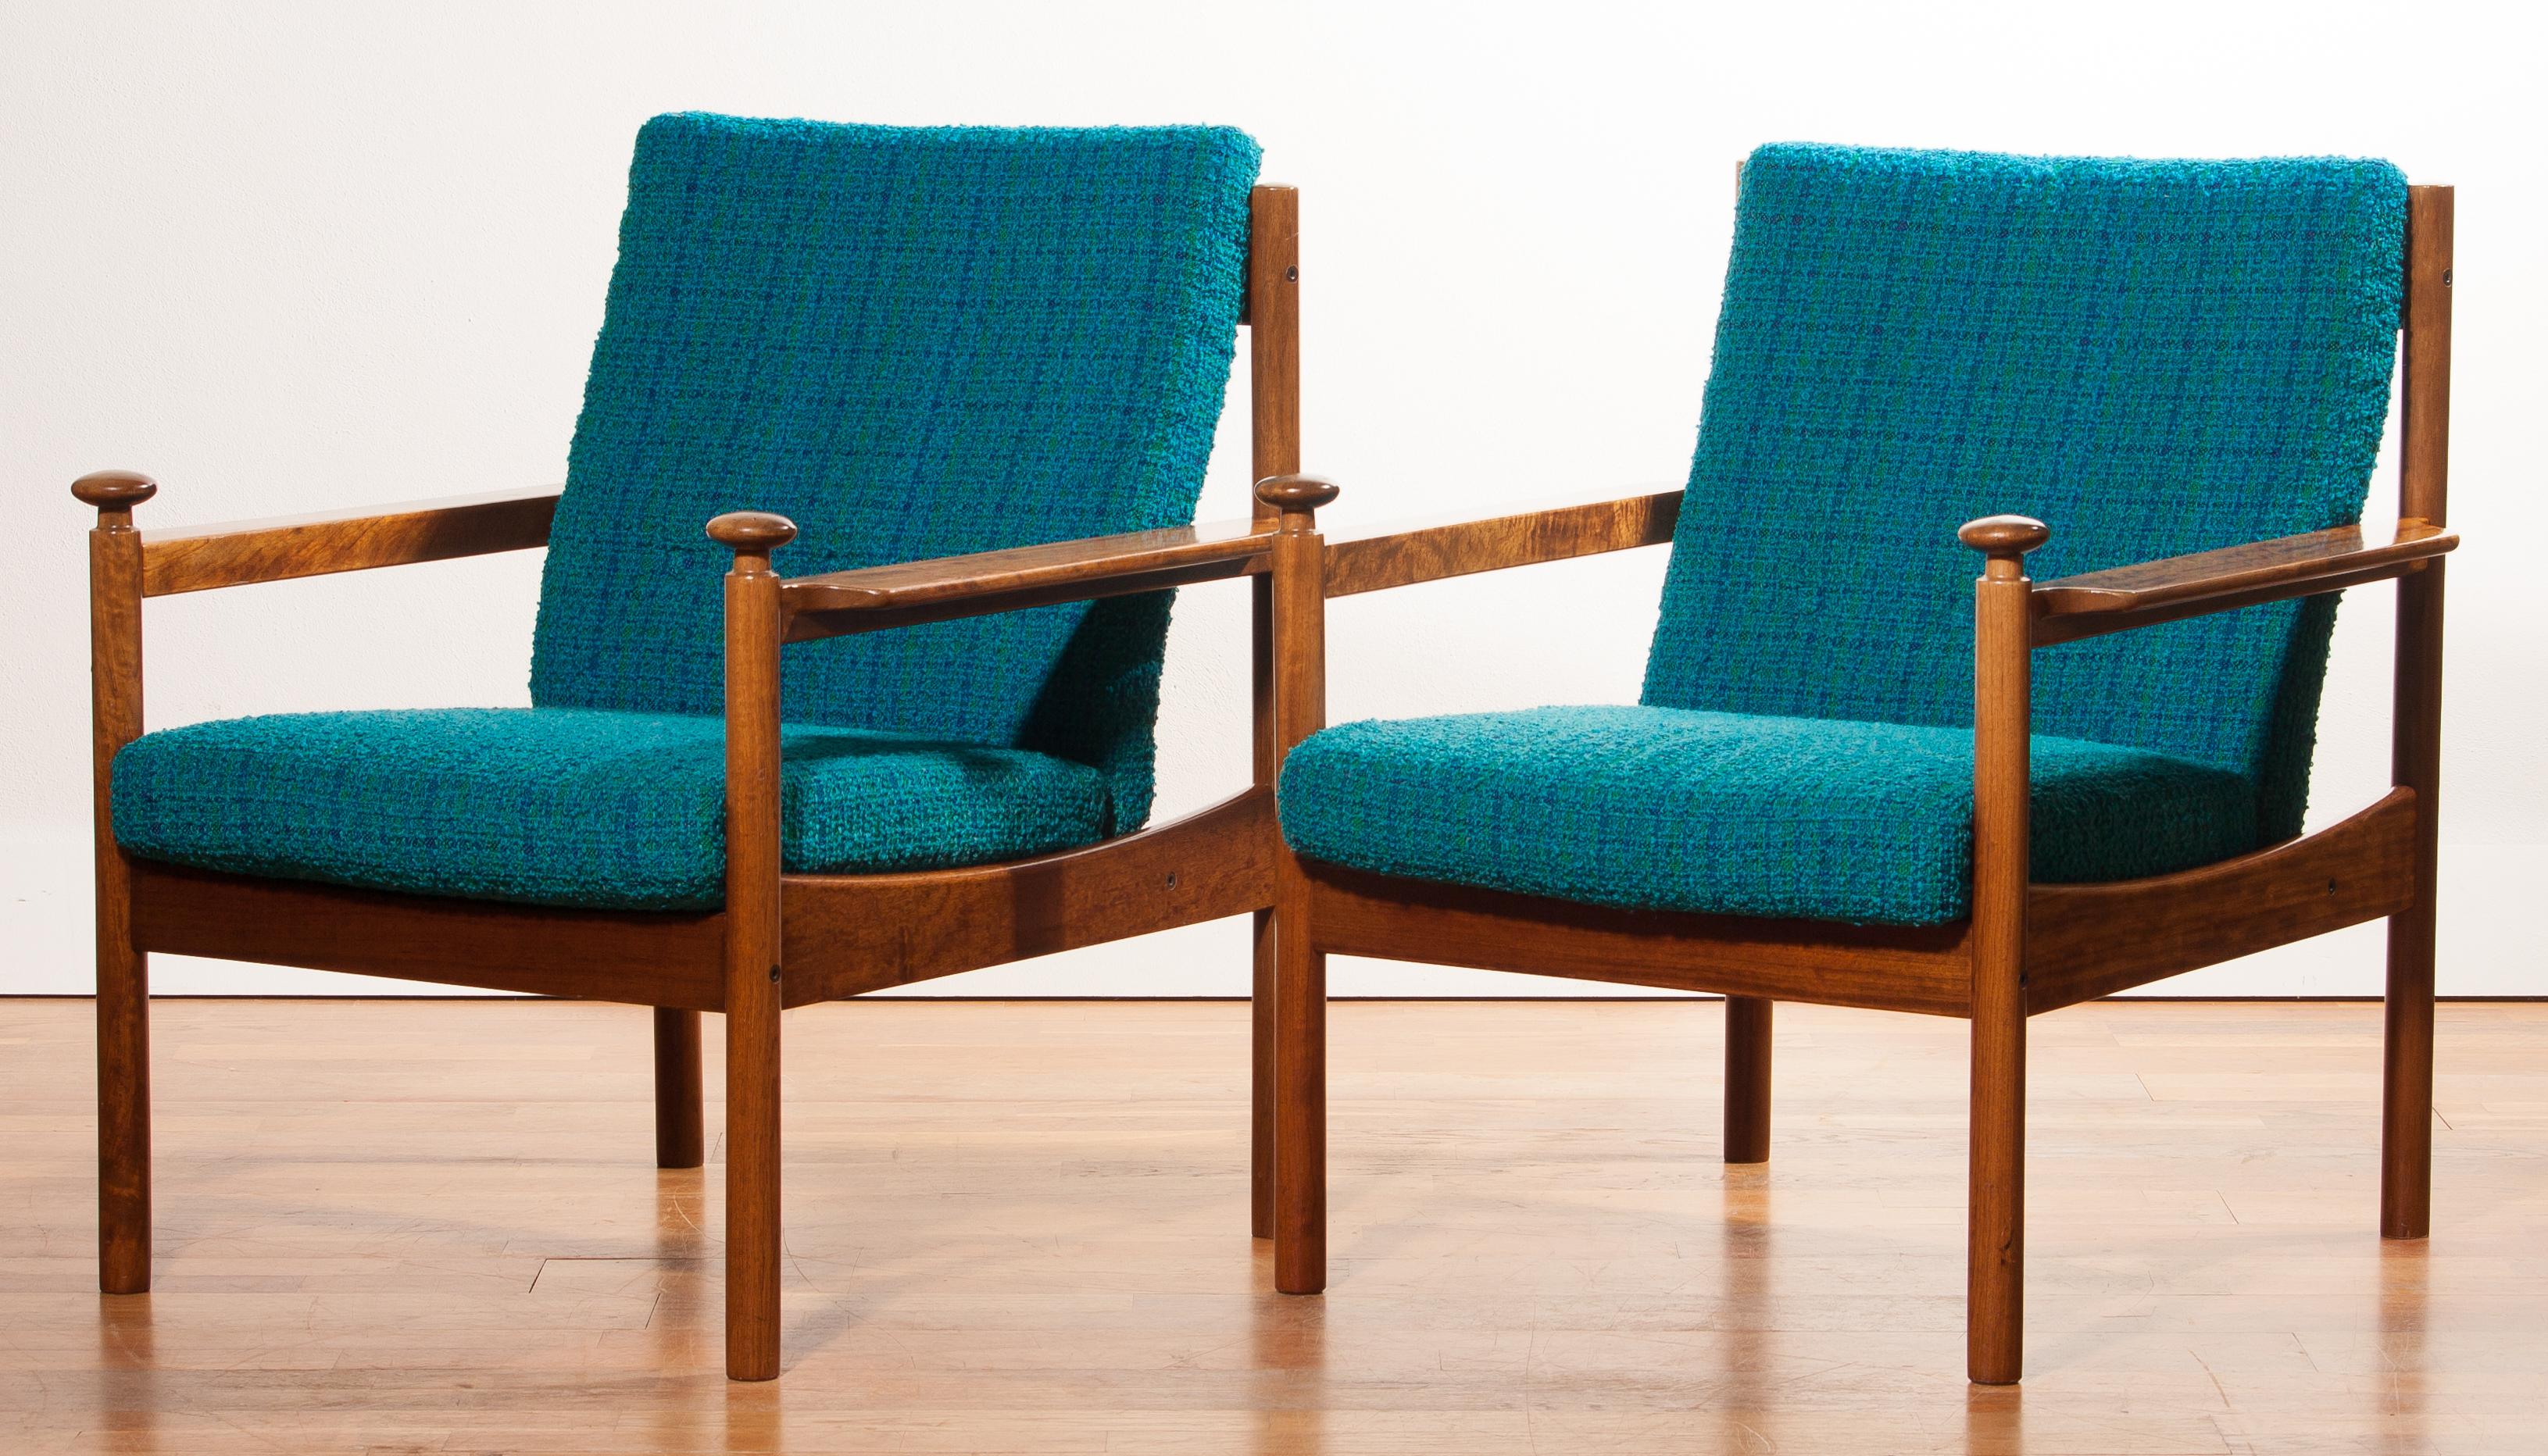 1950s, a Pair of Chairs by Torbjørn Afdal for Sandvik & Co Mobler 1